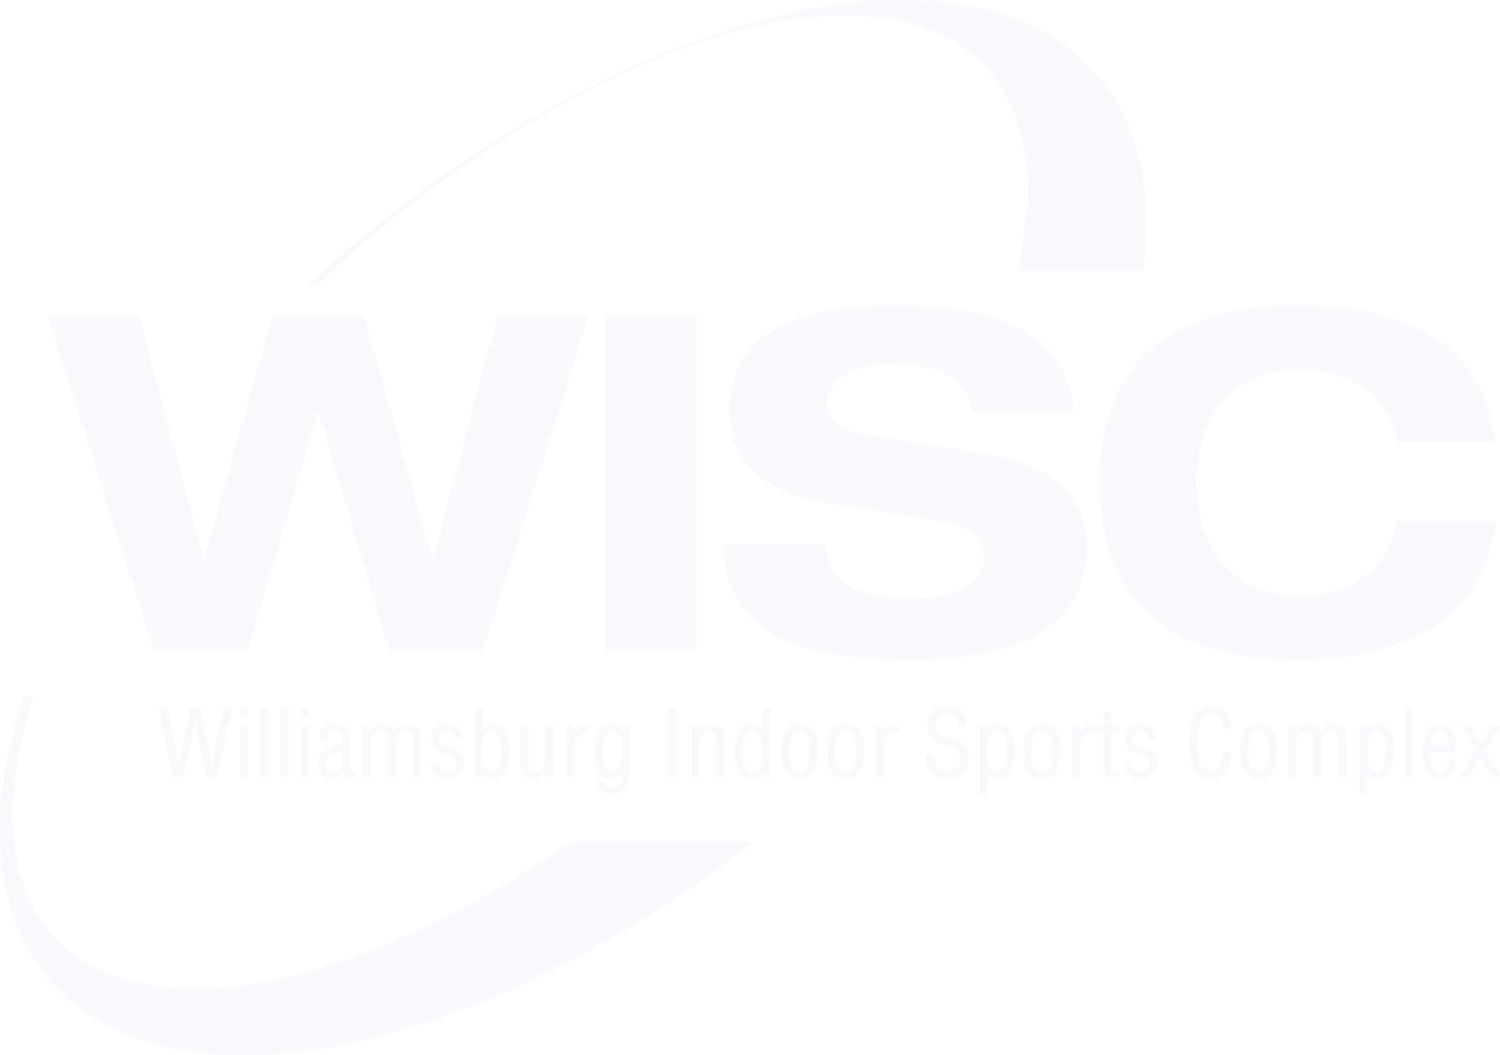 Williamsburg Indoor Sports Complex (WISC)